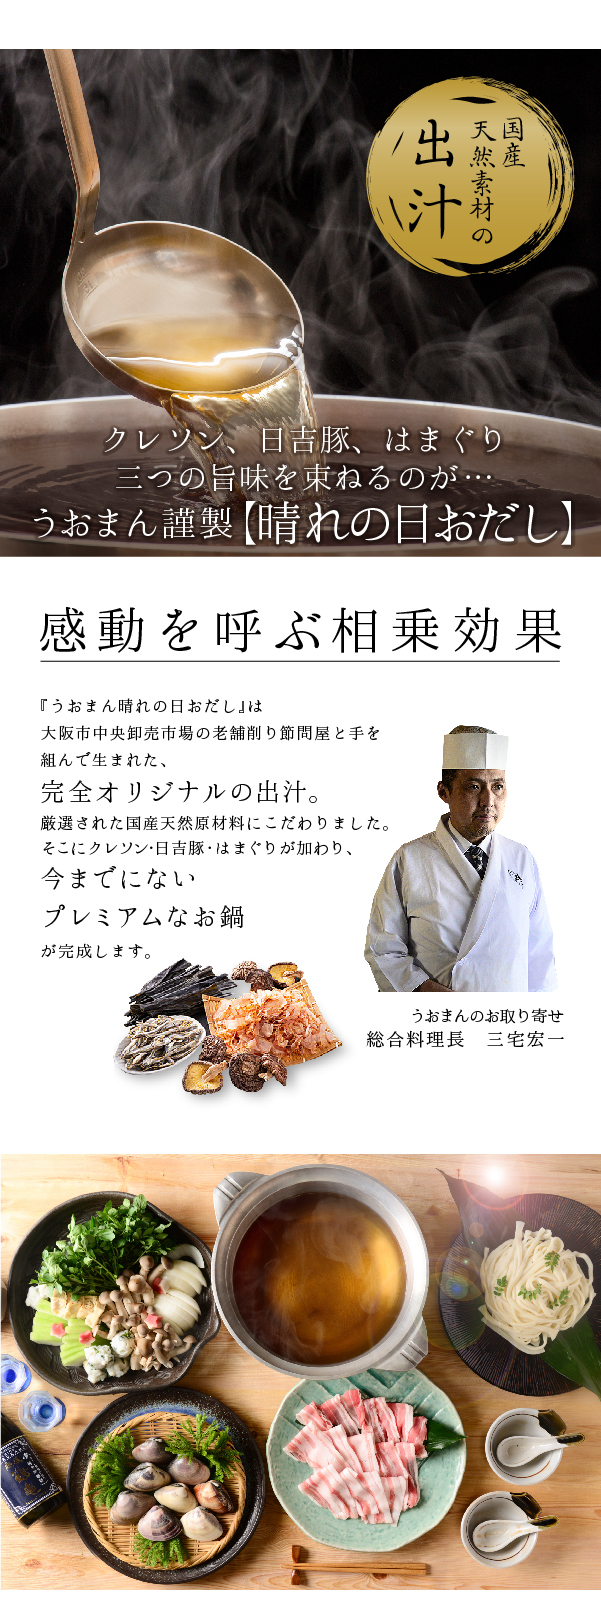 京都日吉豚と九十九里はまぐりのプレミアムクレソン鍋